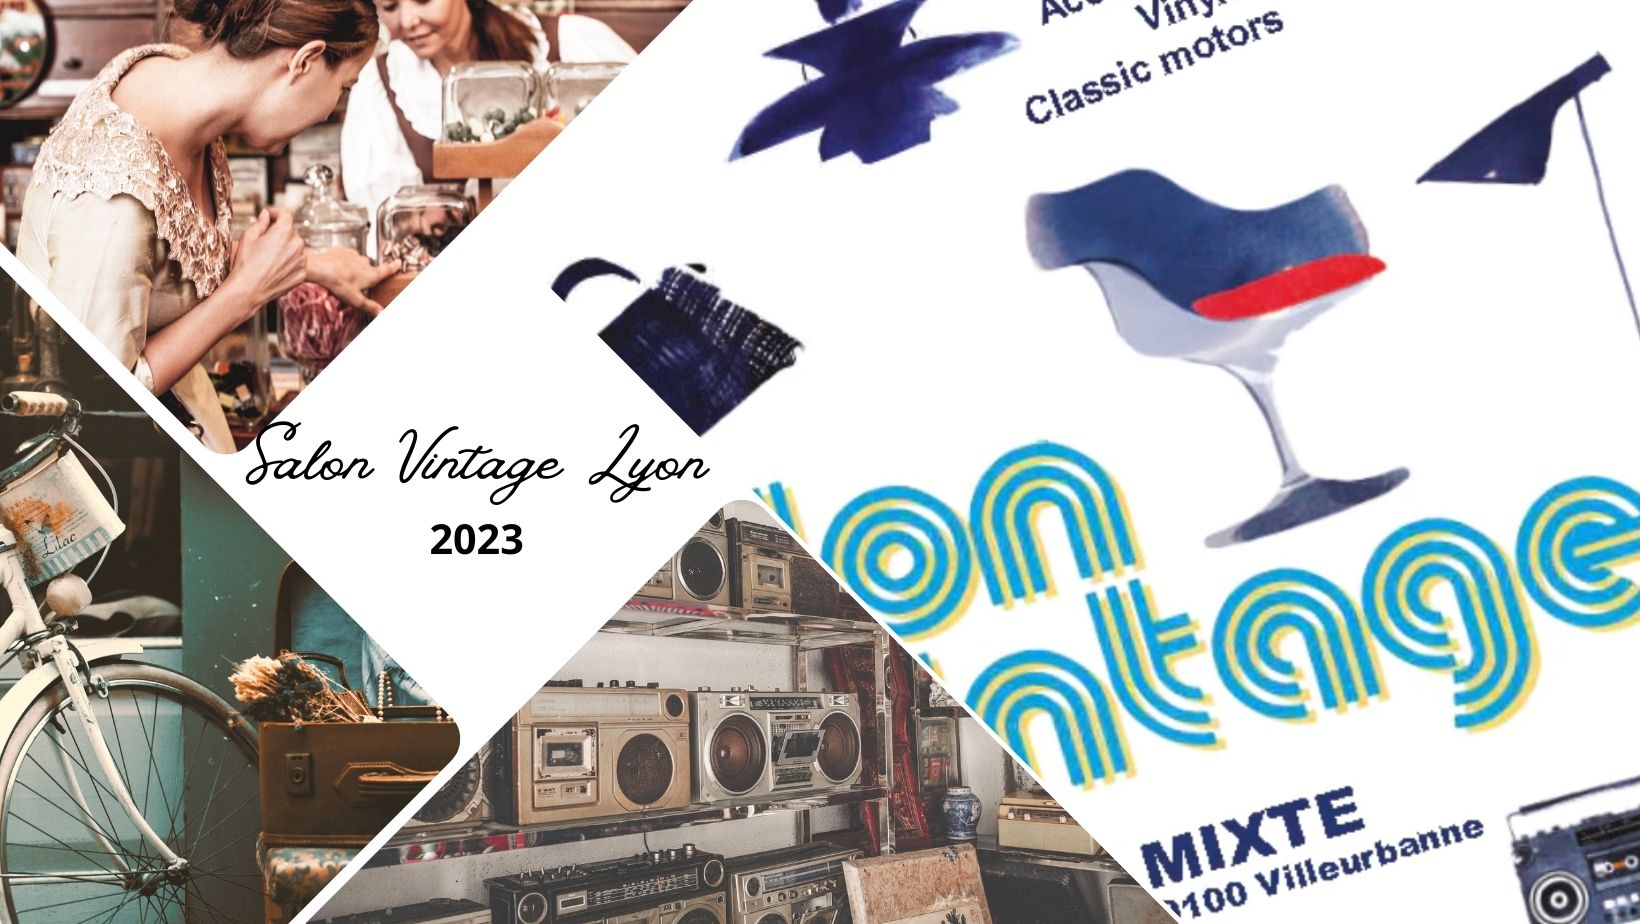 Salon du Vintage Lyon 2023 : dates, tarifs et informations pratiques